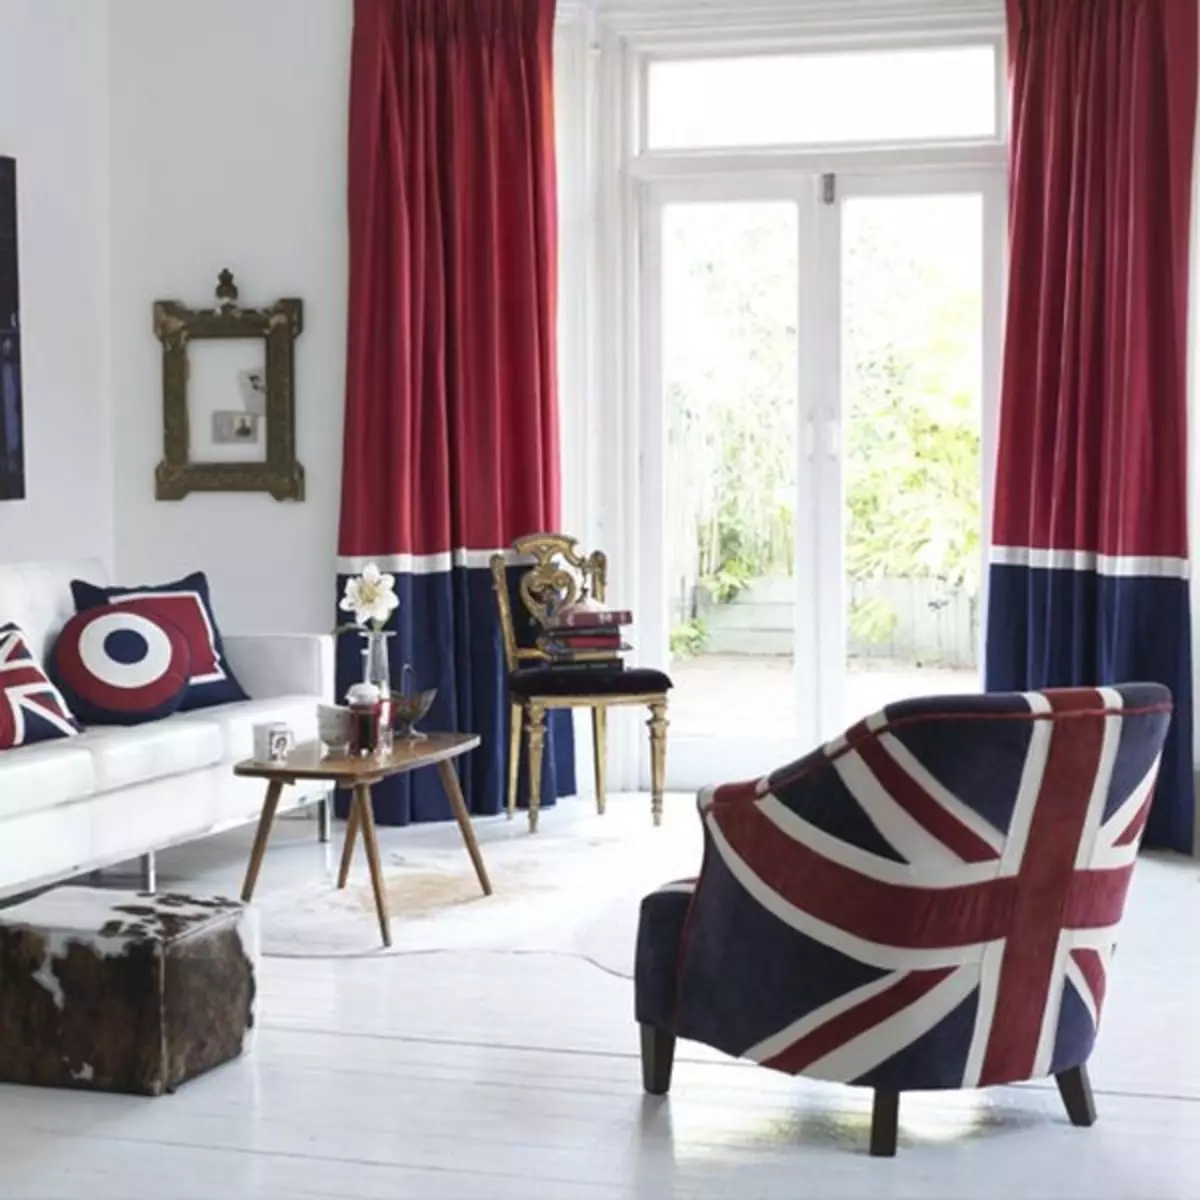 Más cerca de Londres: Bandera británica en el interior (Union Jack - 80 fotos)